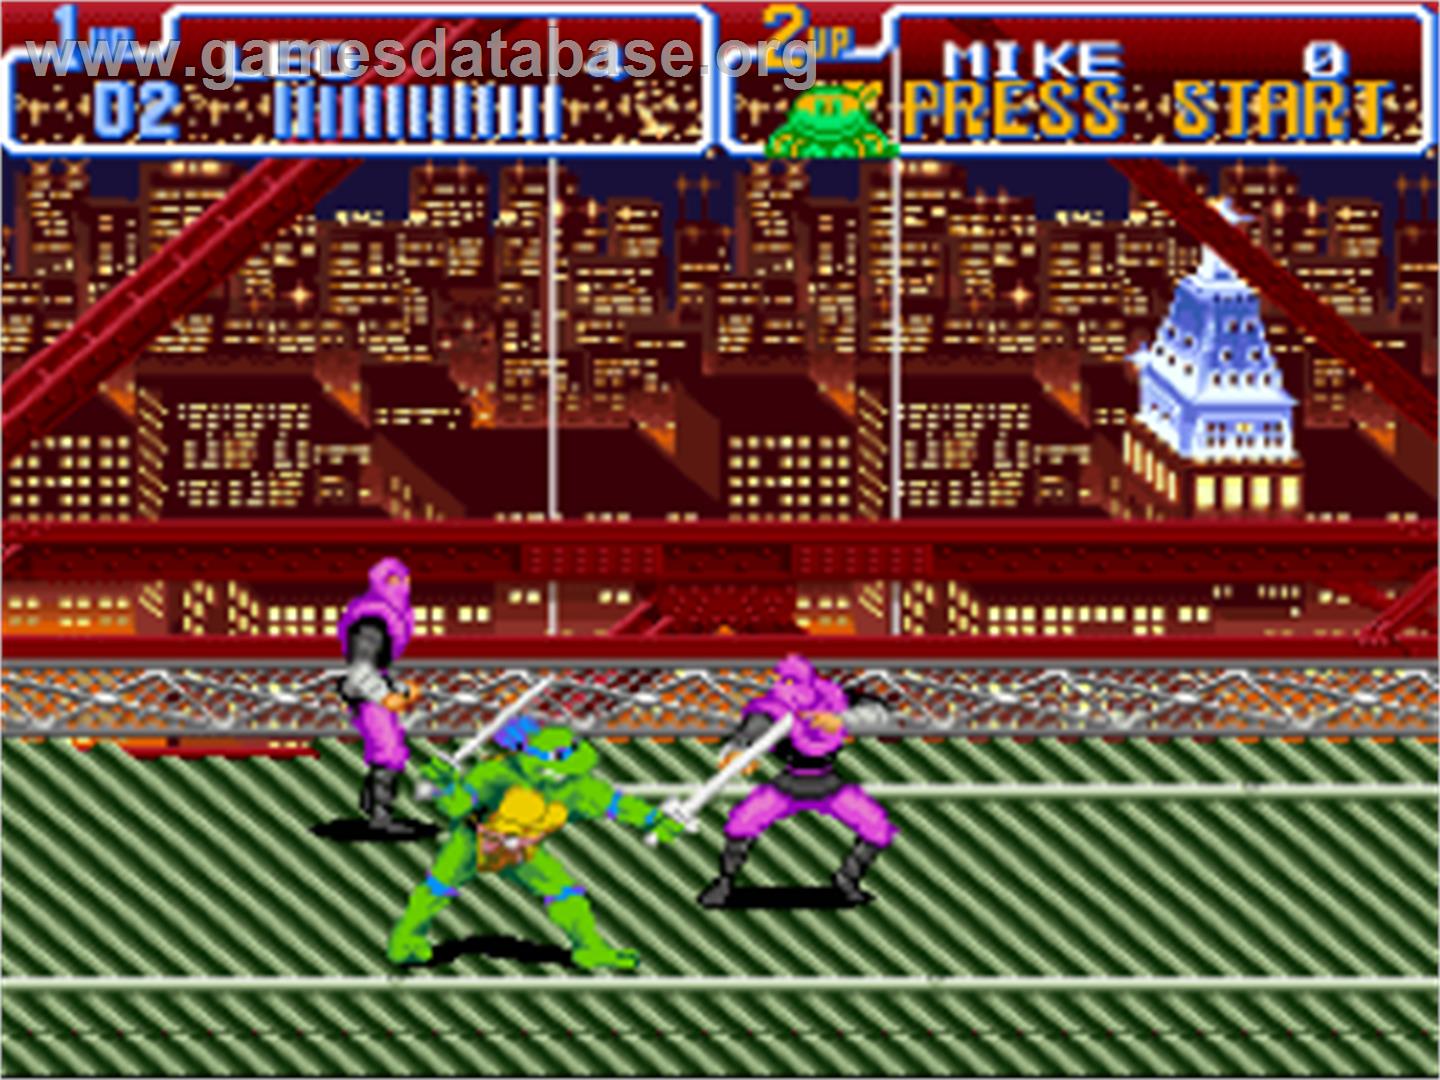 Teenage Mutant Ninja Turtles IV: Turtles in Time - Nintendo SNES - Artwork - In Game